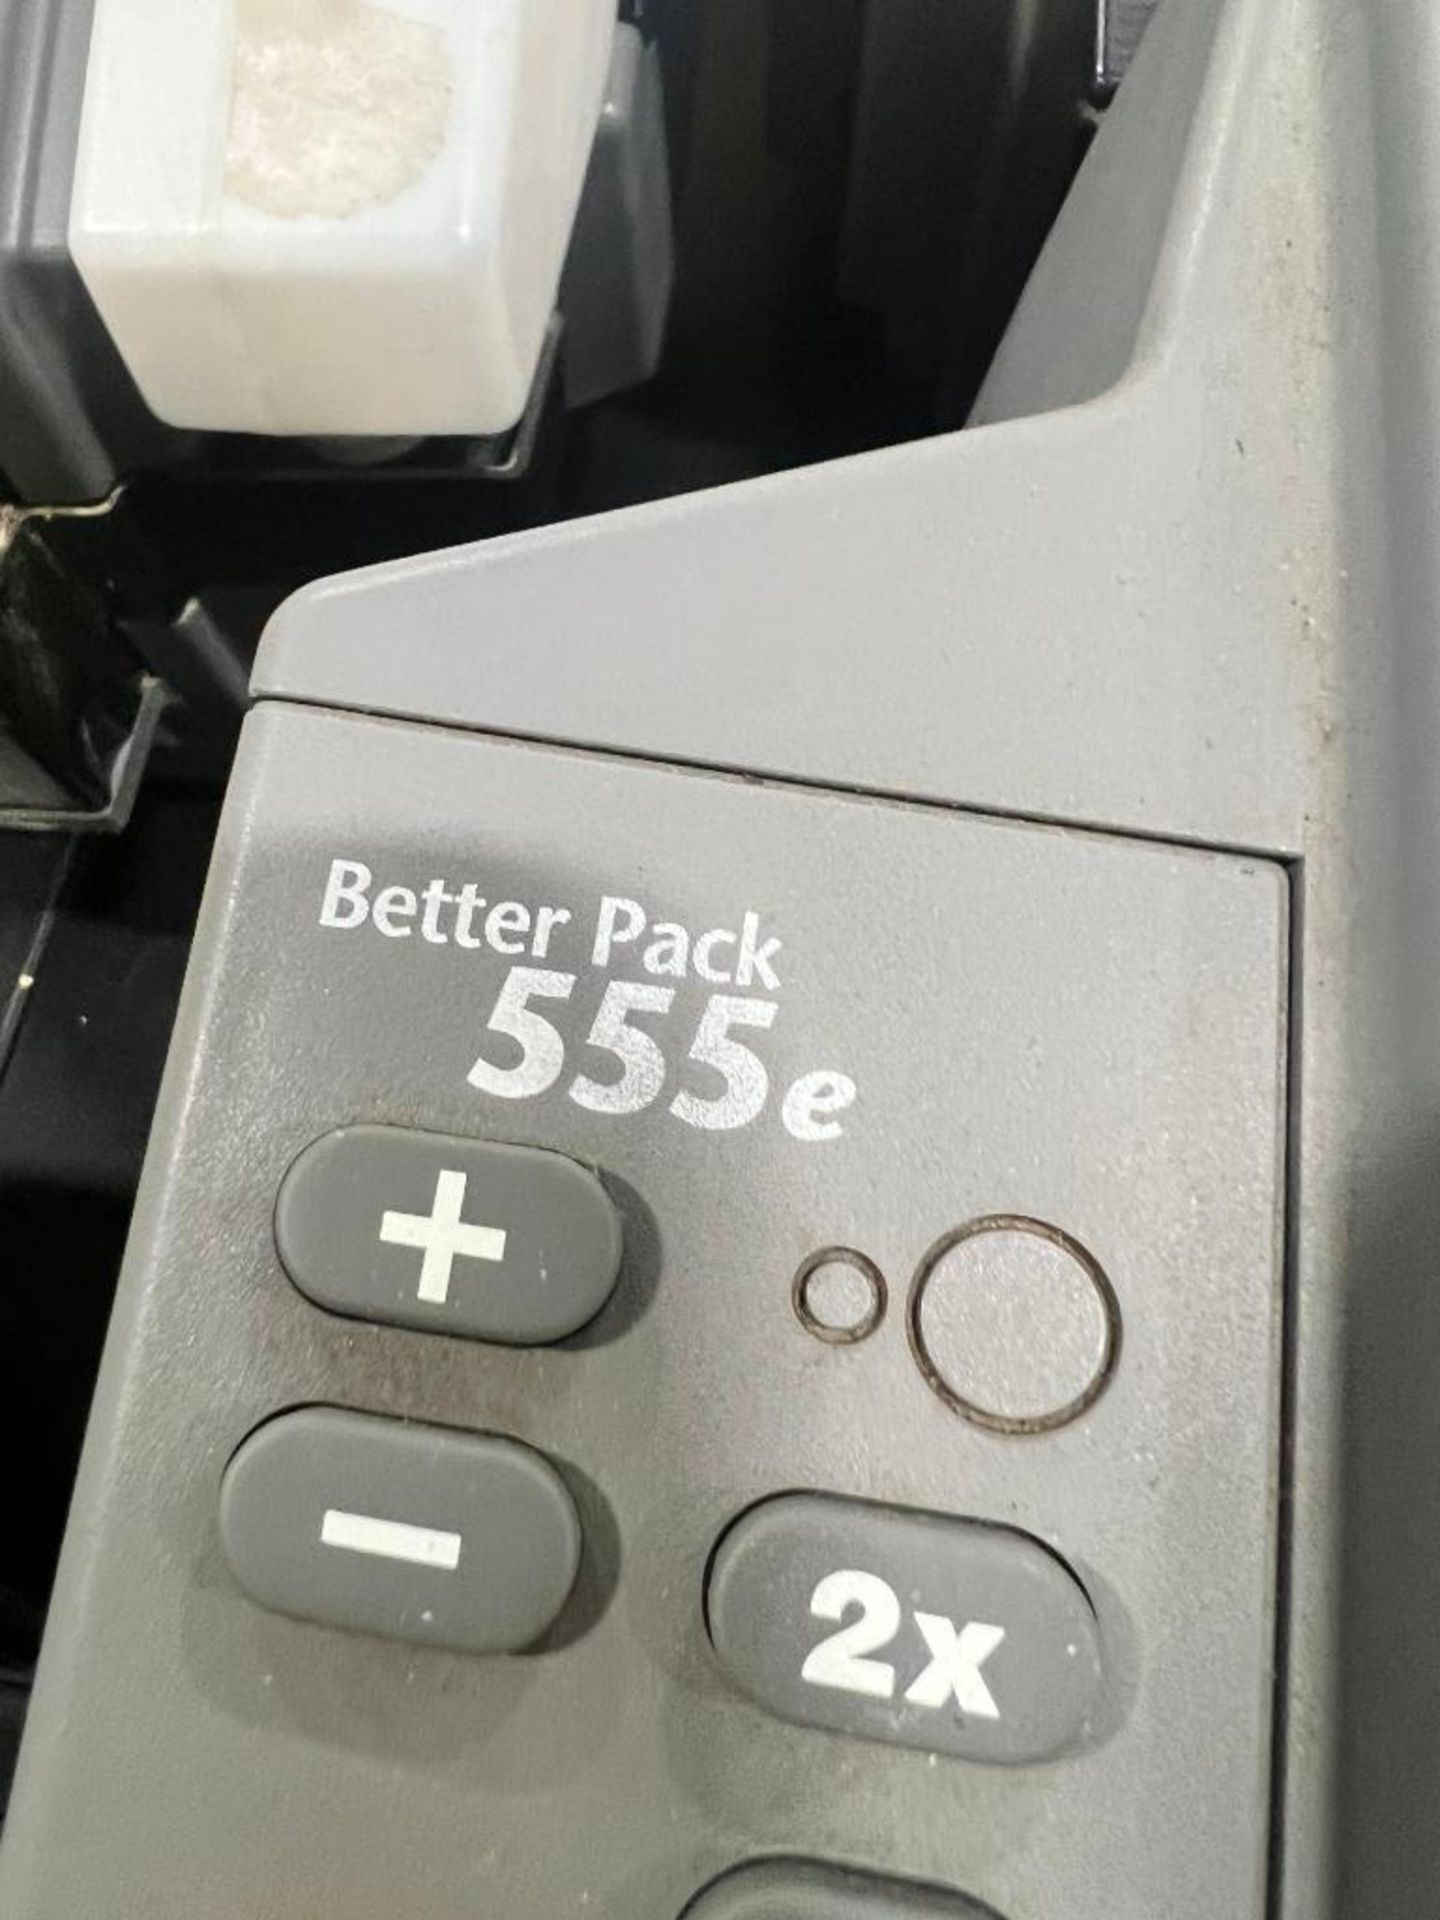 (3x) Better Pack Gummed Tape Dispensers, Model 555E - Image 6 of 6